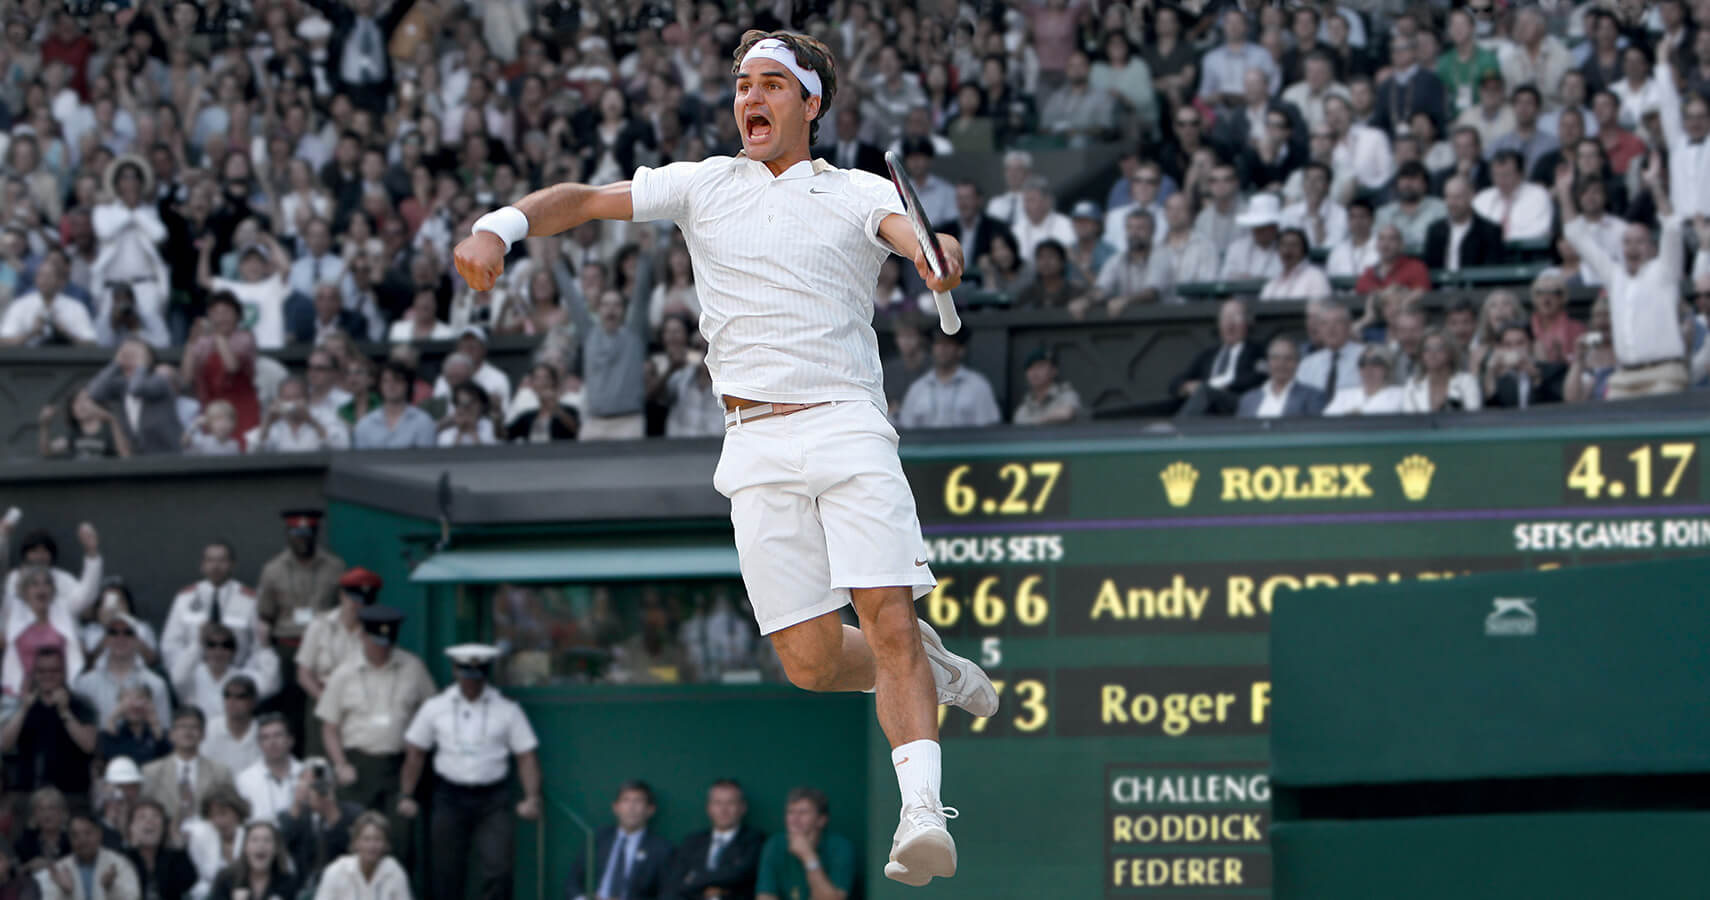 Roger Federer at Wimbledon, Rolex logo in background banner